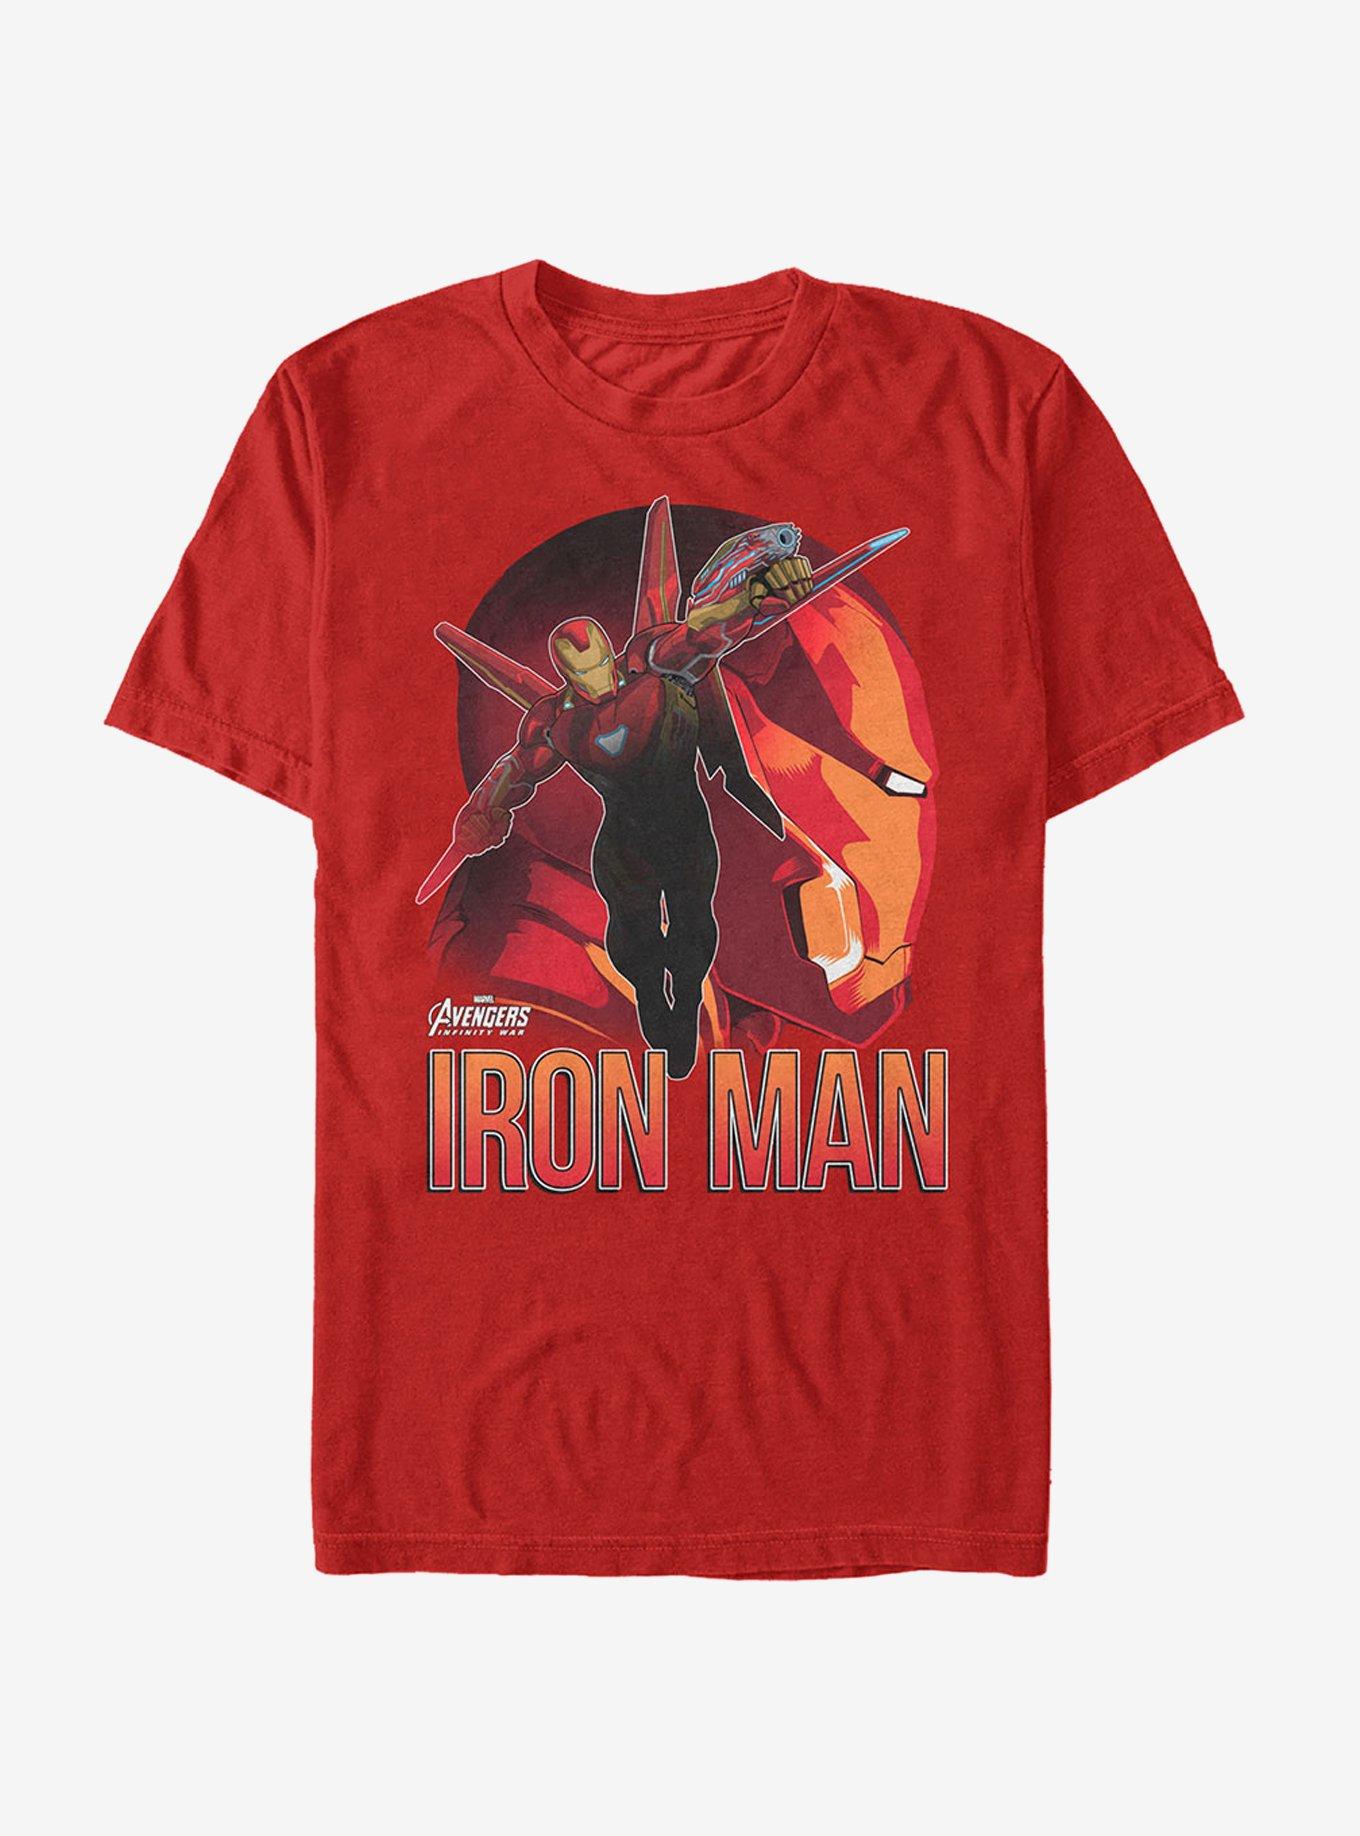 Marvel Avengers: Infinity War Iron Man View T-Shirt